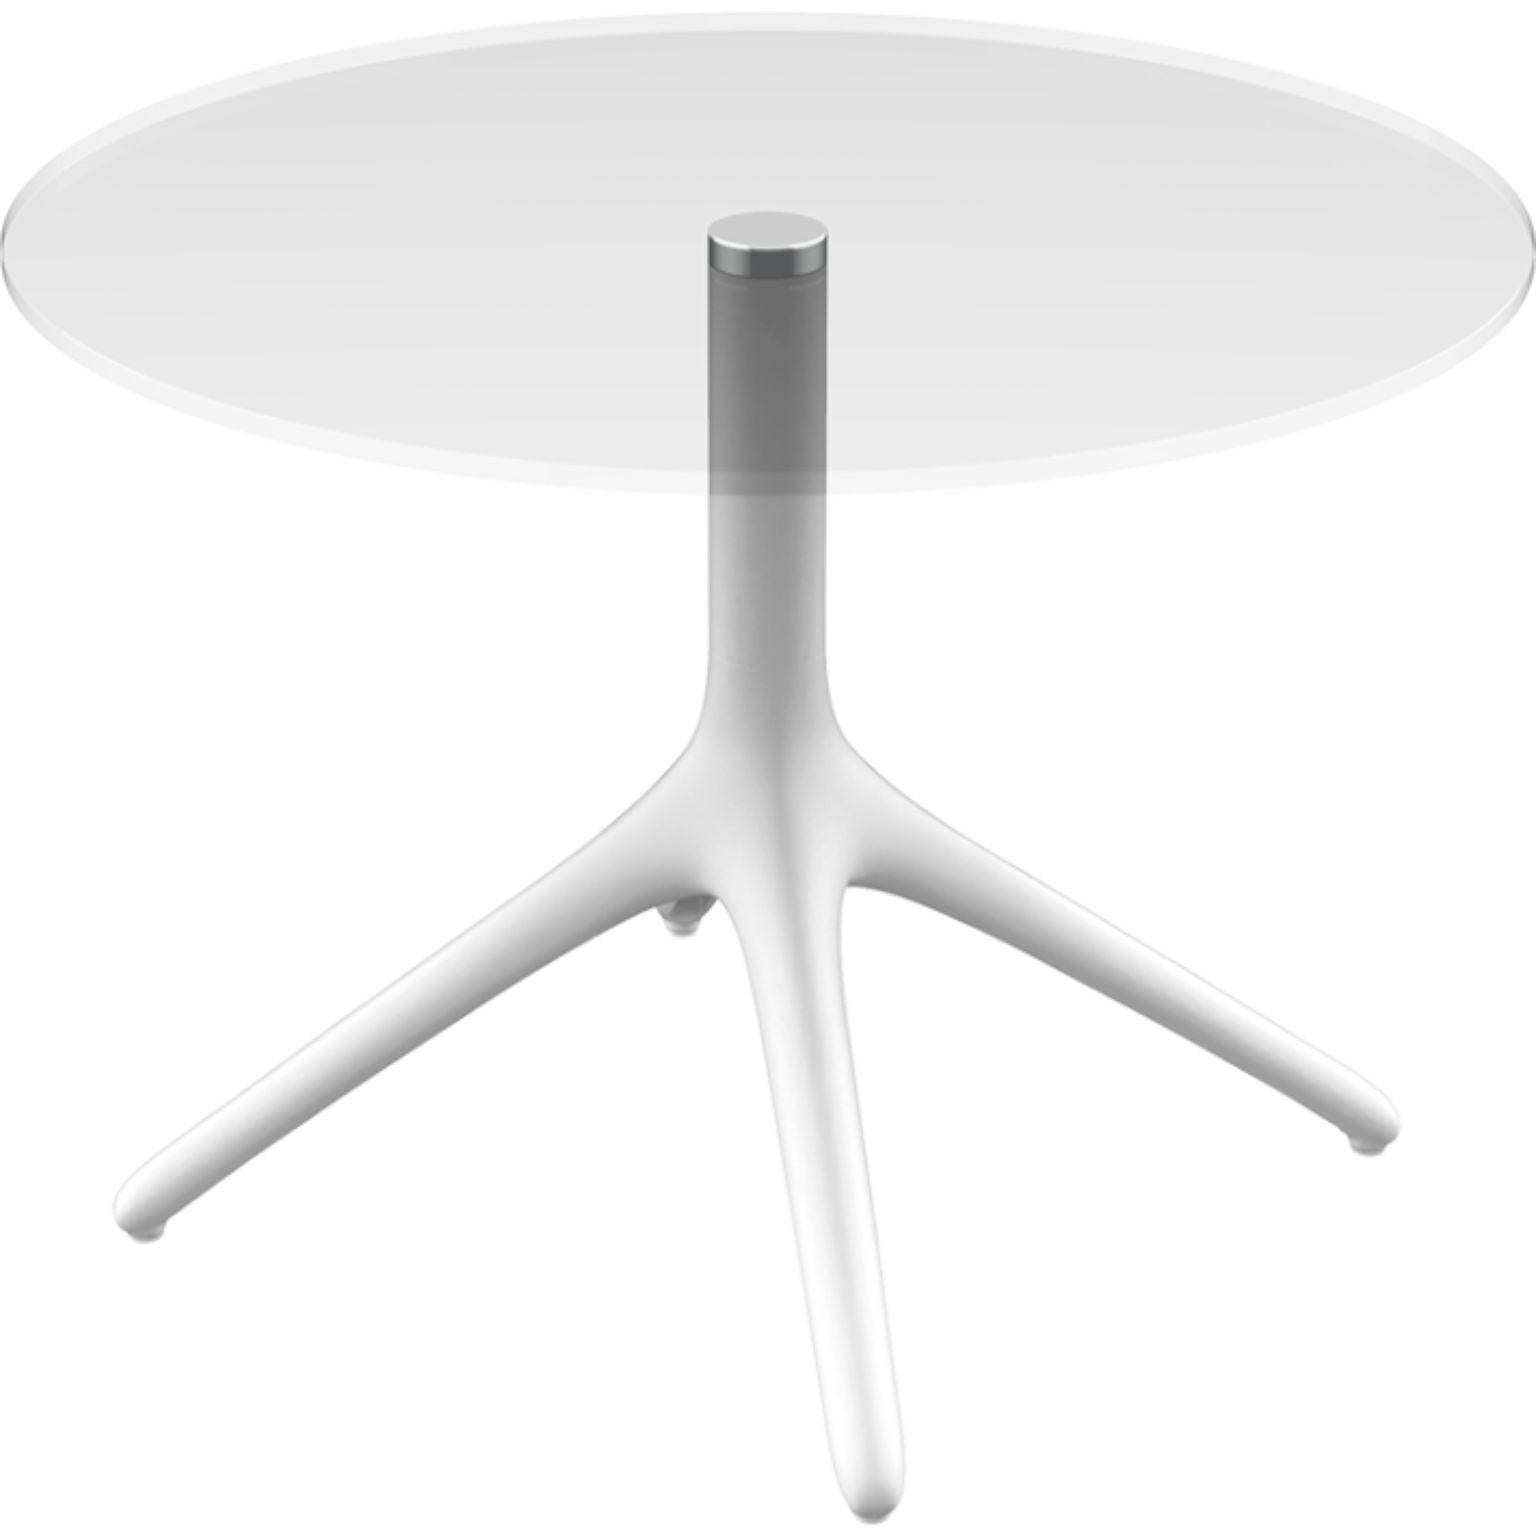 Table Uni blanche 50 par MOWEE
Dimensions : D 45,5 x H 50 cm
Matériau : Aluminium, verre Tempered
Poids : 5 kg
Également disponible en différentes couleurs et finitions. Version pliable disponible.-

Une table conçue pour être la plus